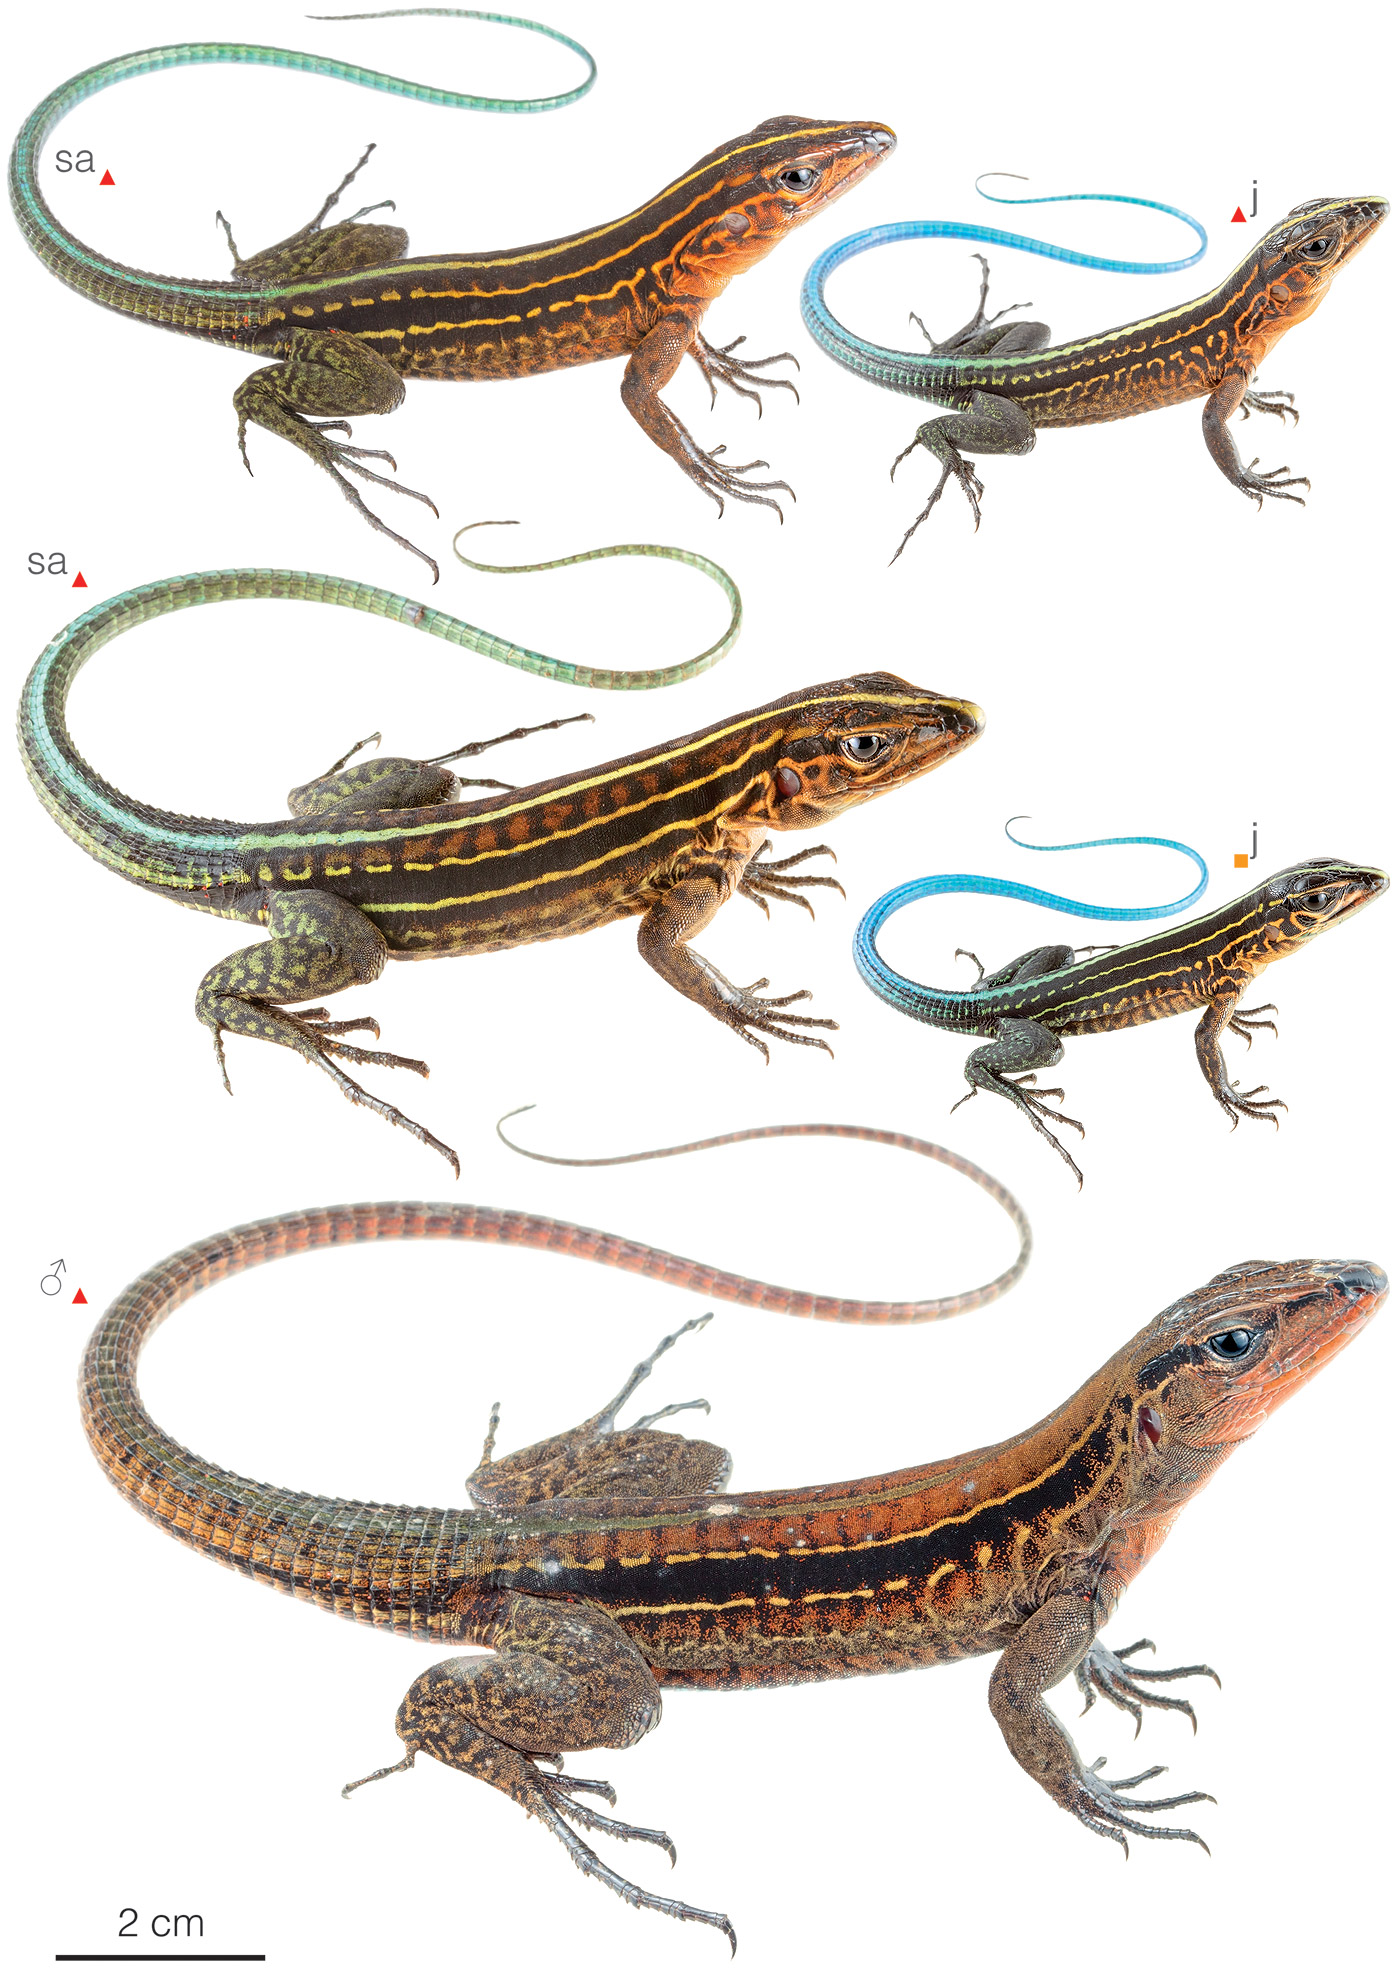 Figure showing variation among individuals of Holcosus bridgesii